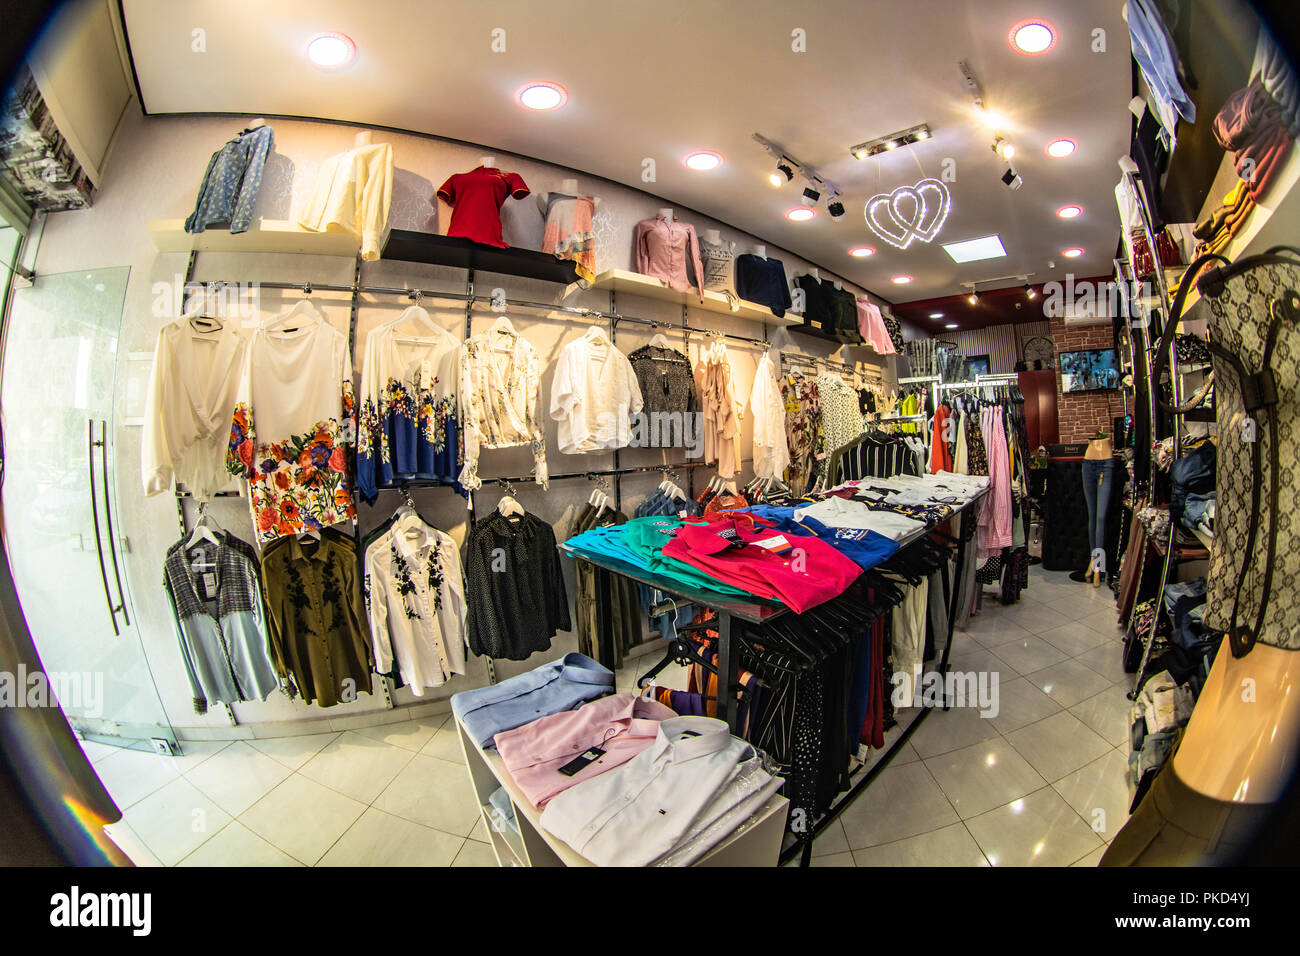 Tienda de moda ropa hombre mujer Shopping touna house Foto de stock